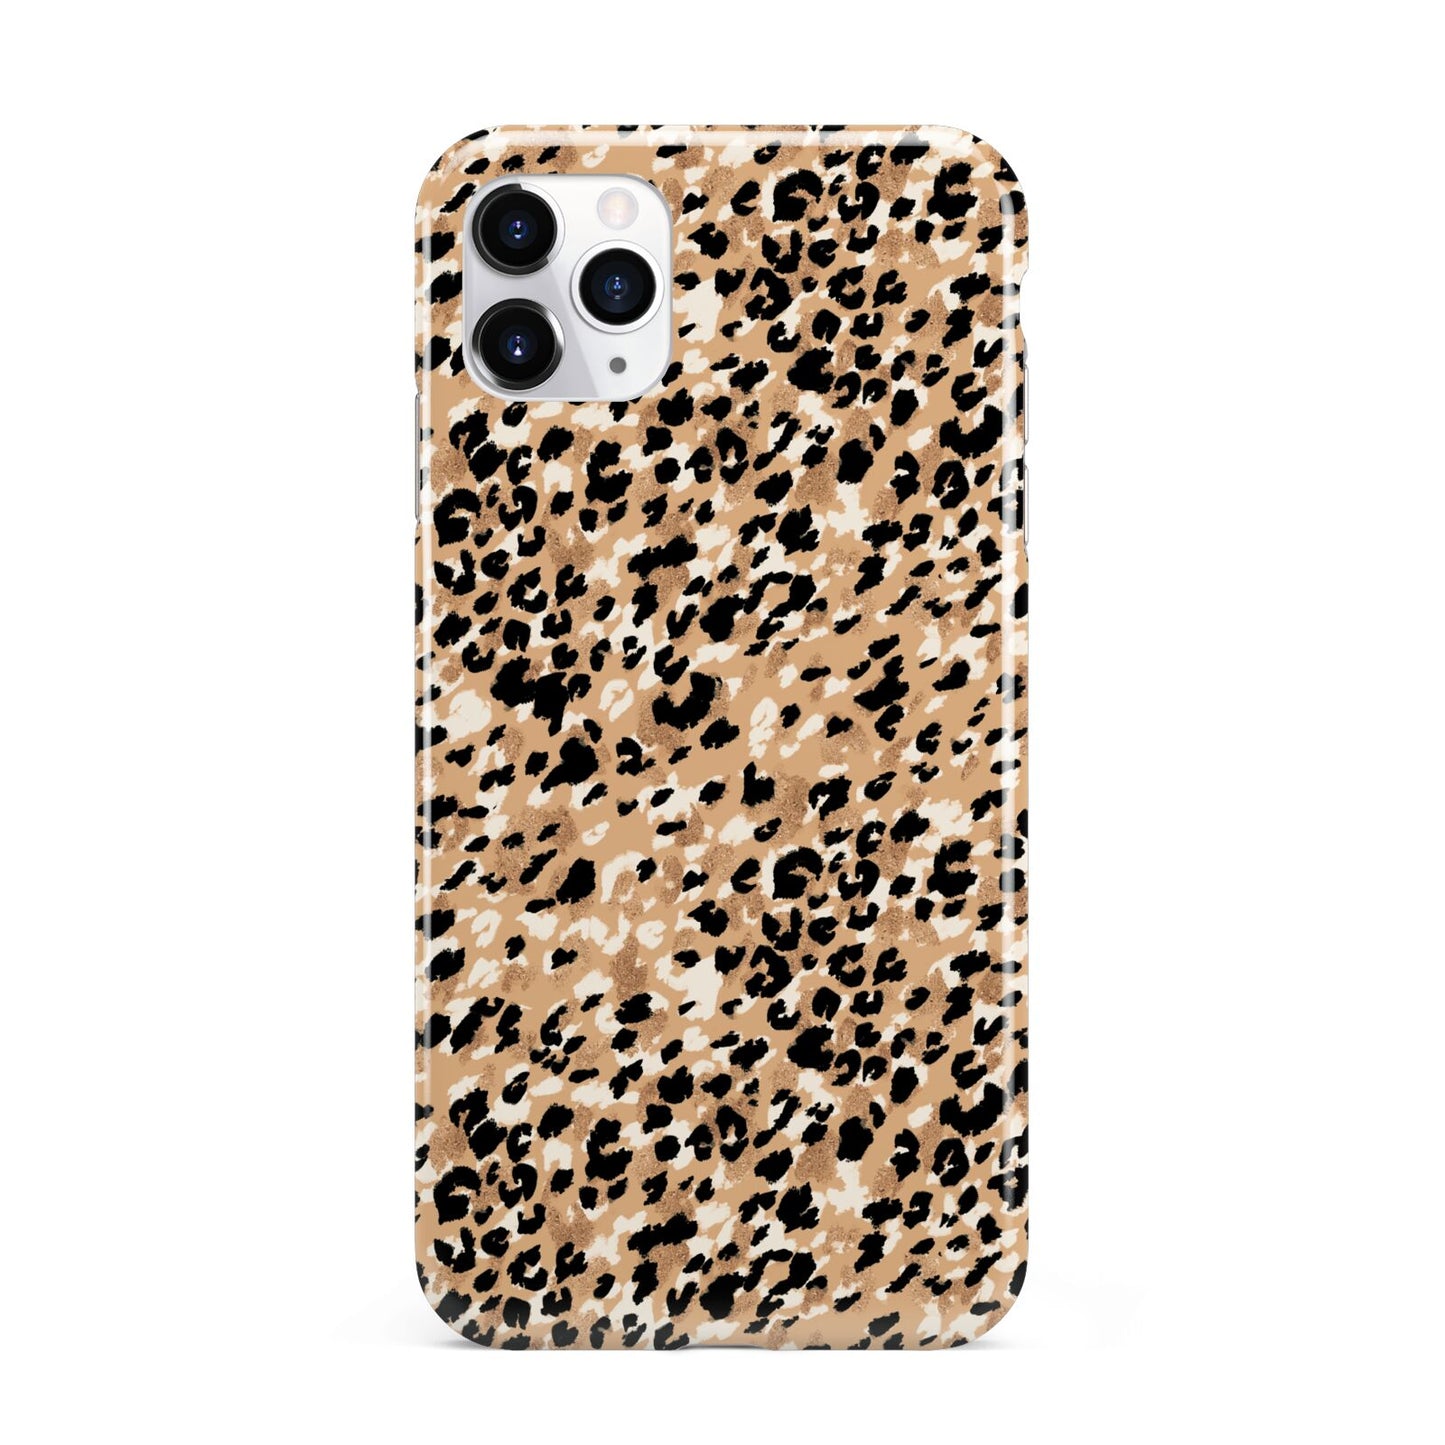 Leopard Print iPhone 11 Pro Max 3D Tough Case